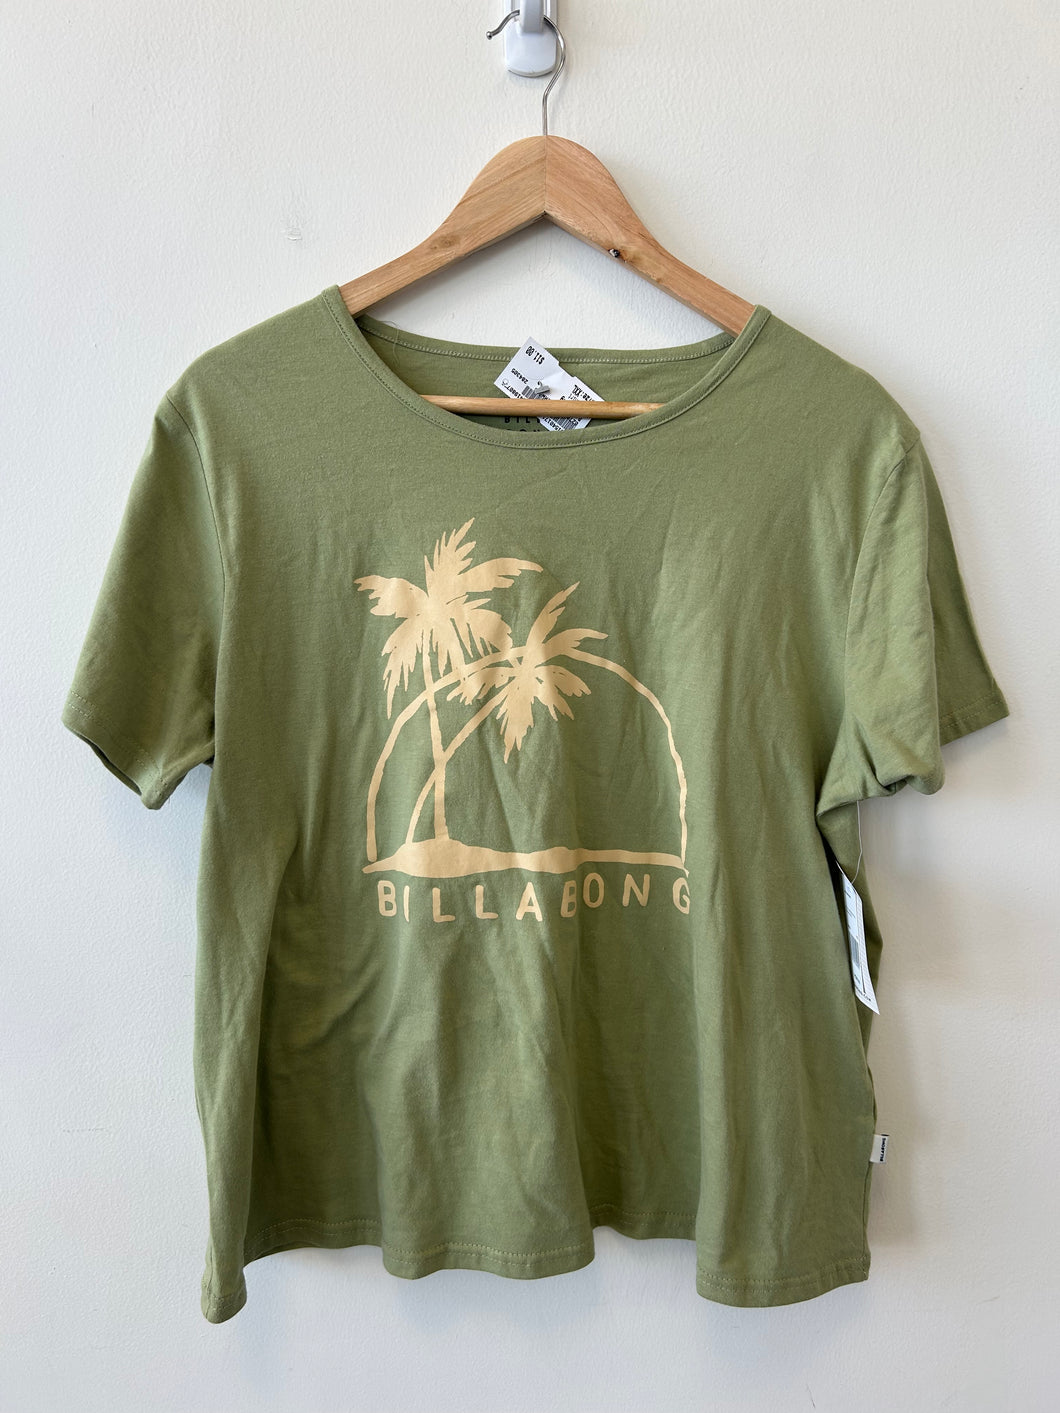 Billabong T-Shirt Size XXL